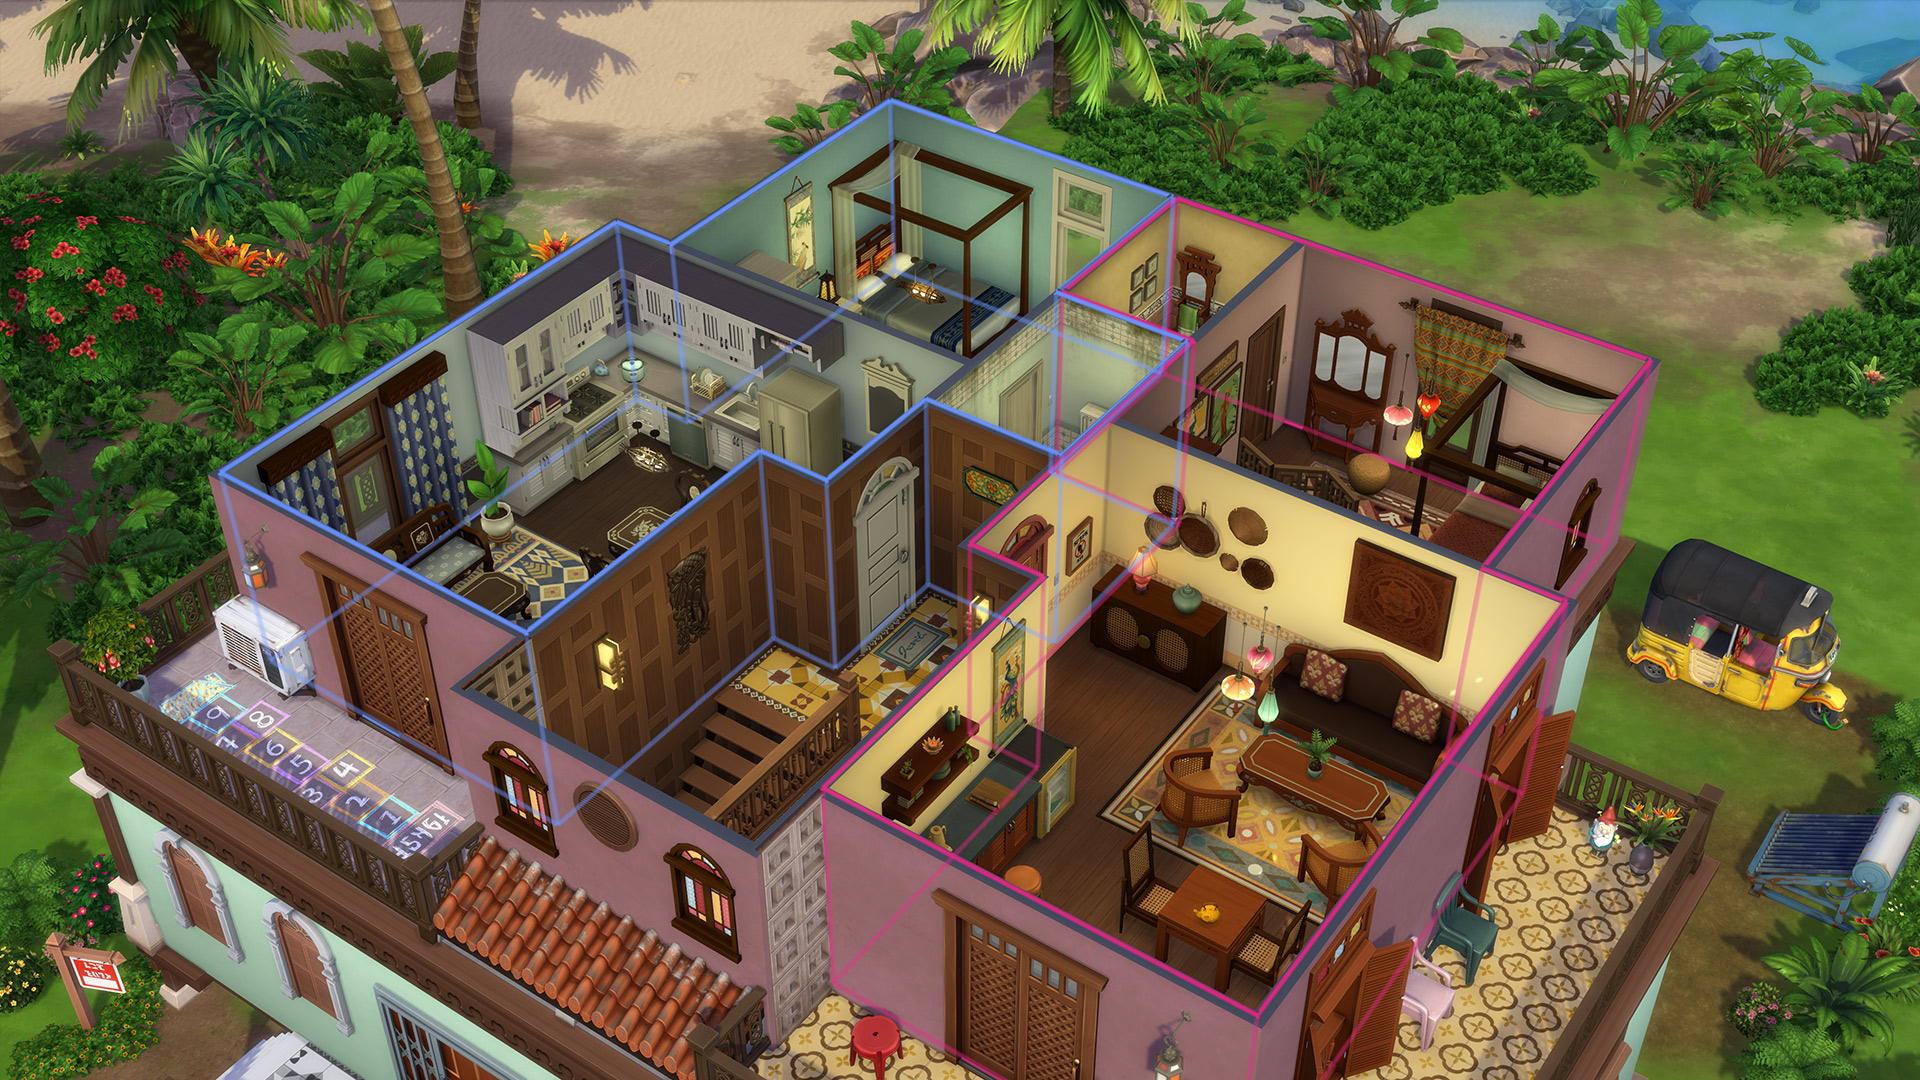 Les Sims 4 : À Louer - Heure de sortie, détails et plus encore